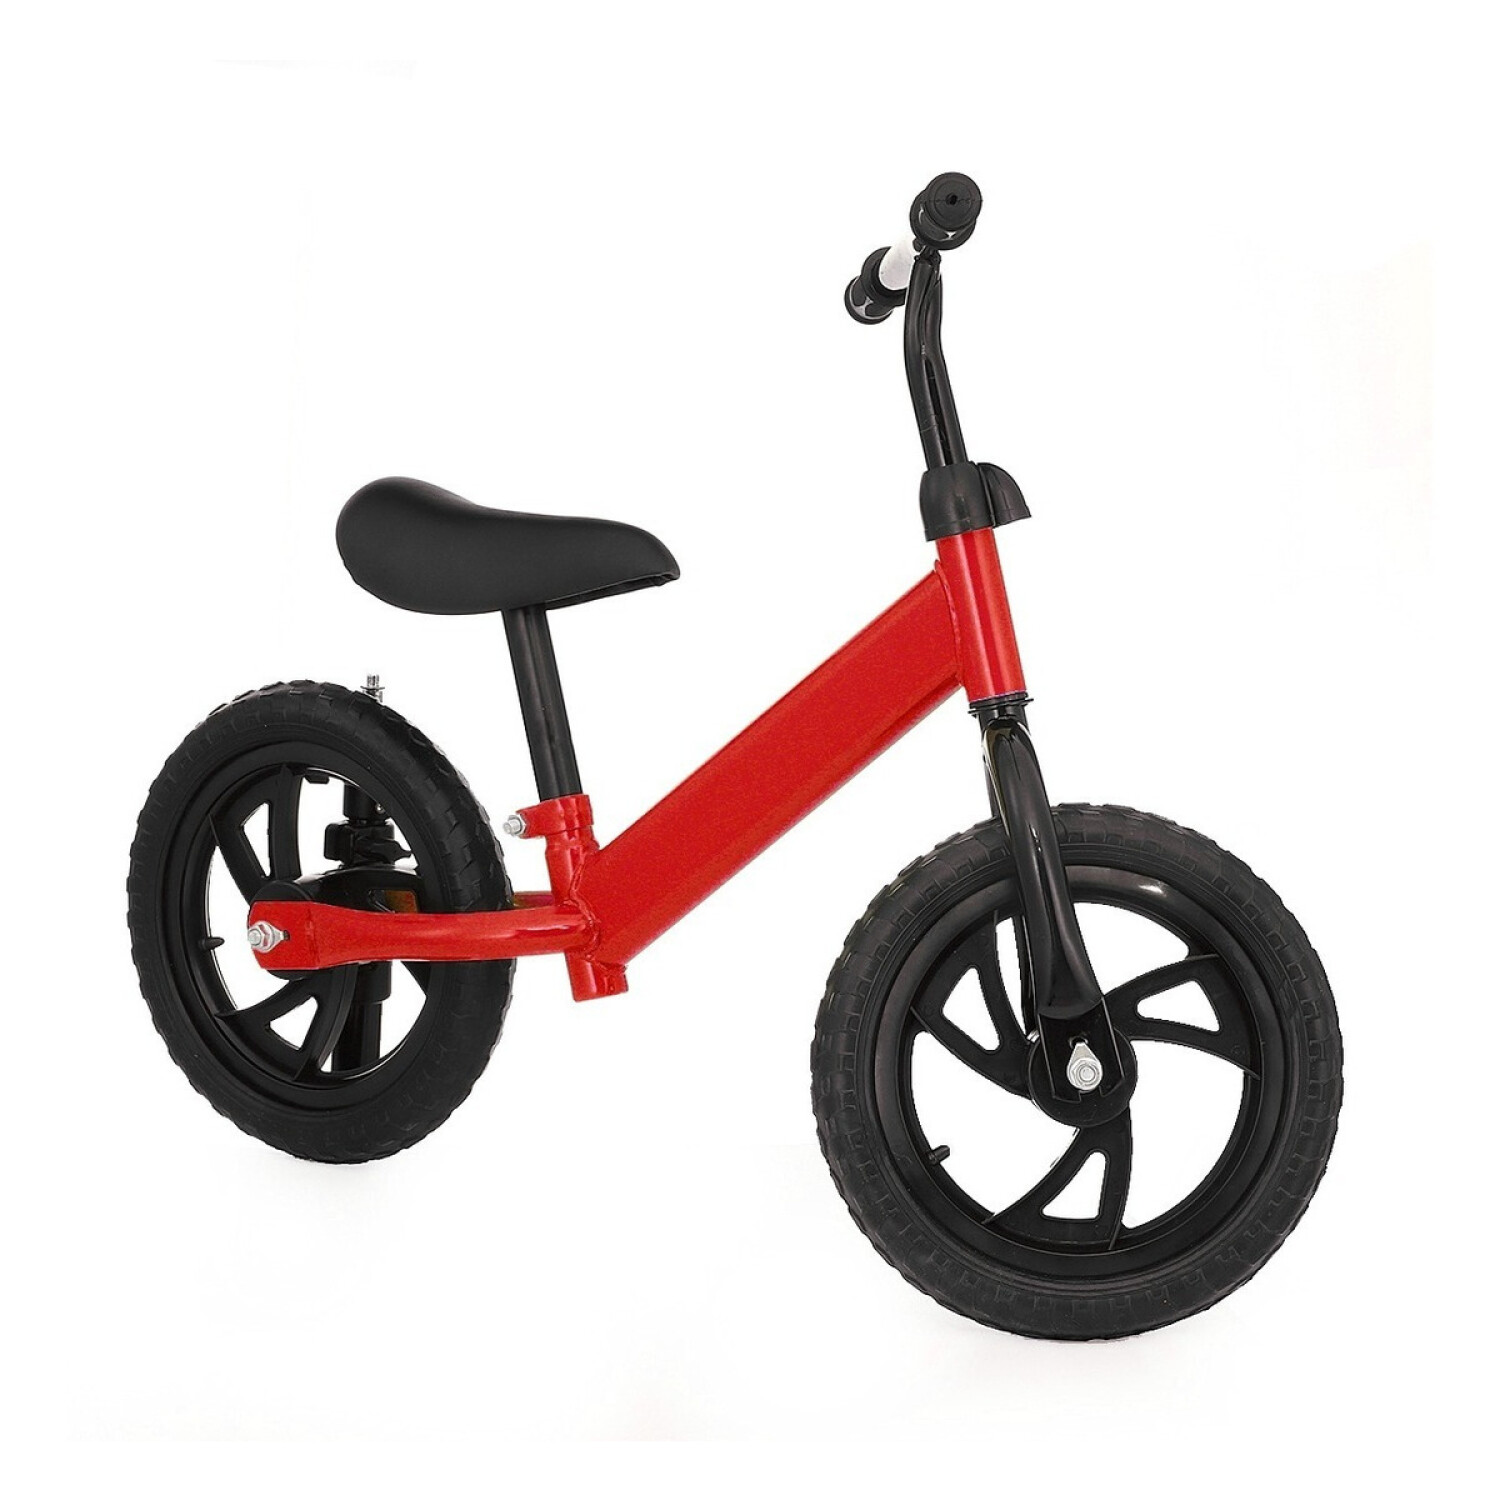 Bicicleta Pedagógica Sin Pedales, Color Rojo, Vértigo